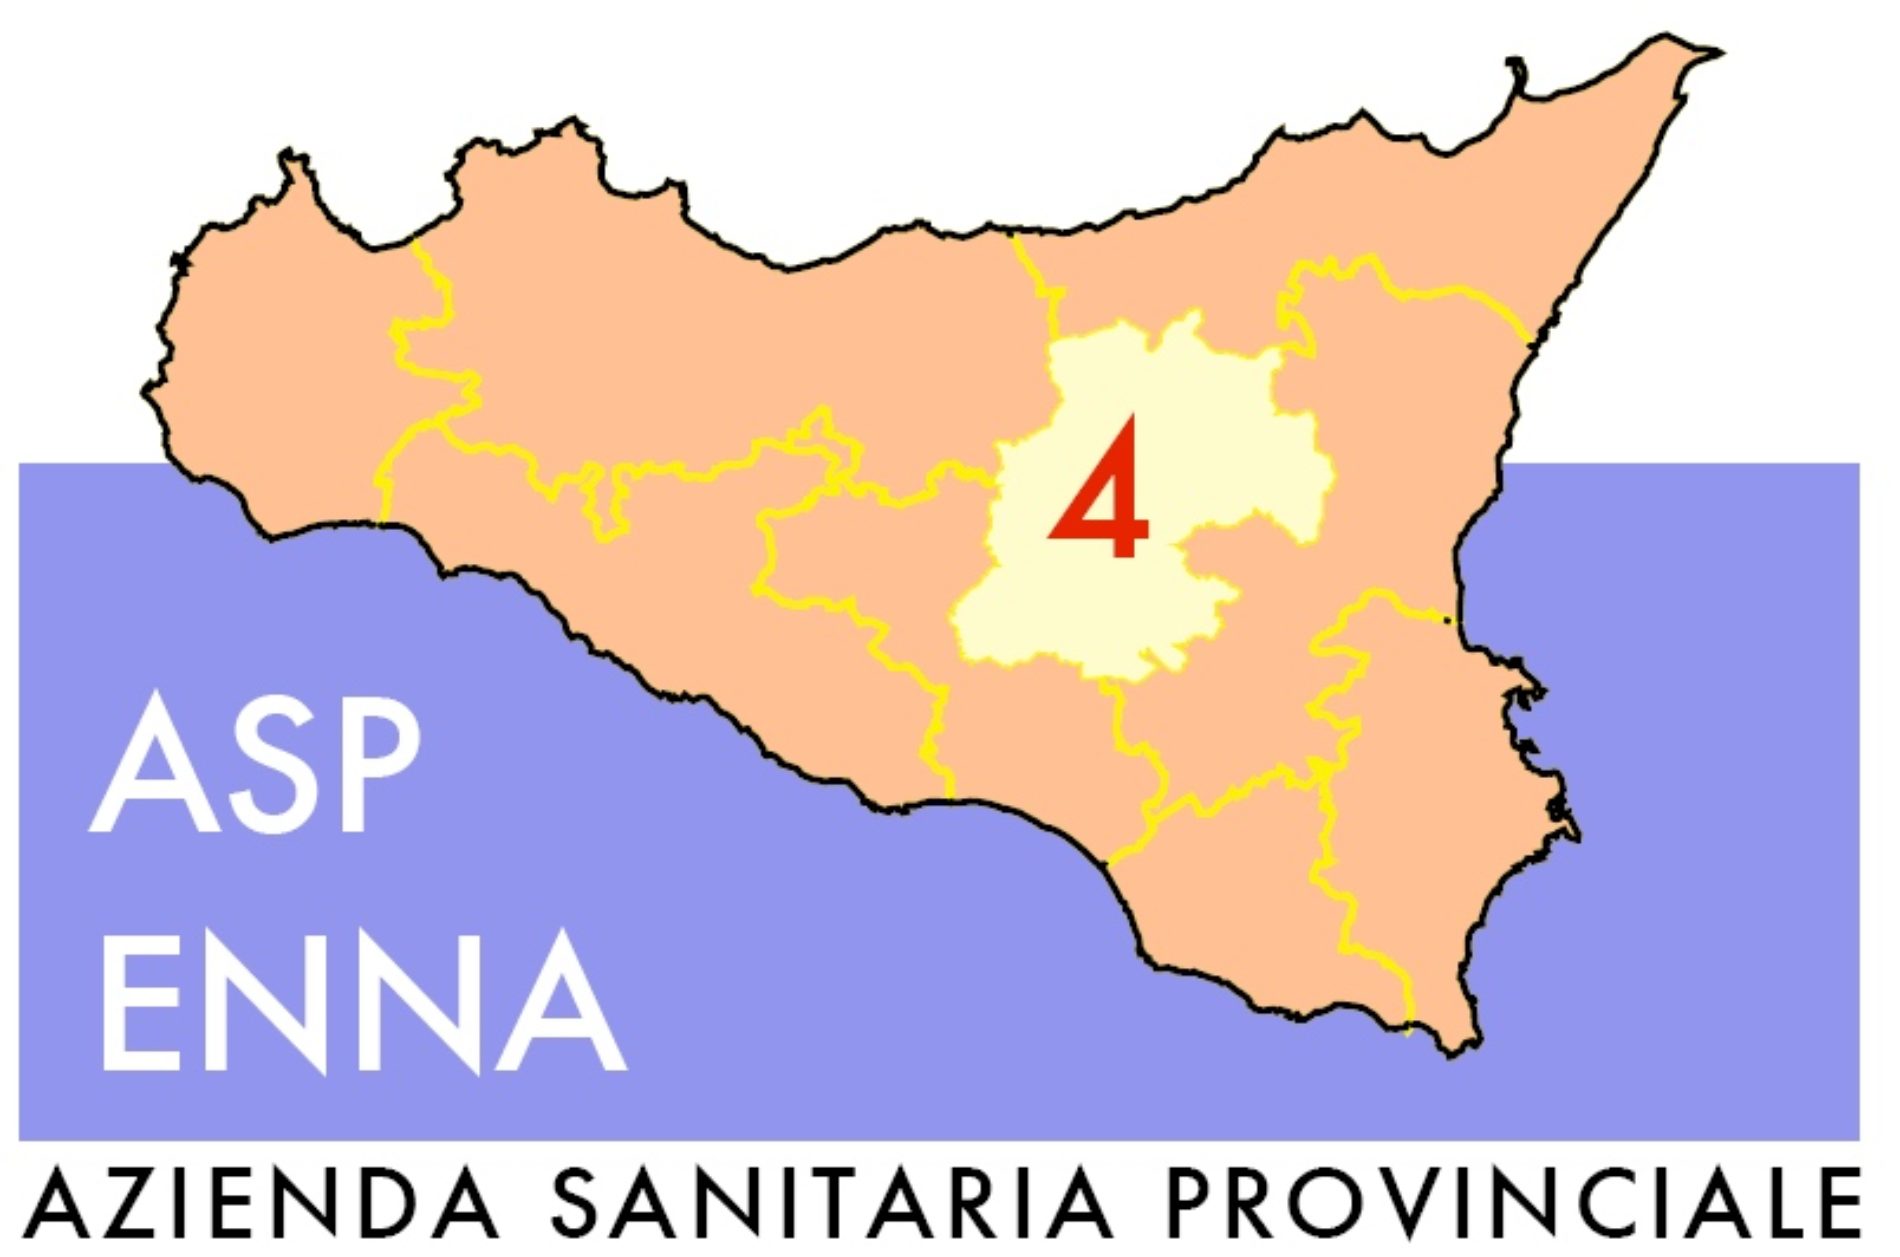 ASP Enna. Vaccinazione di prossimità in otto Comuni della provincia di Enna